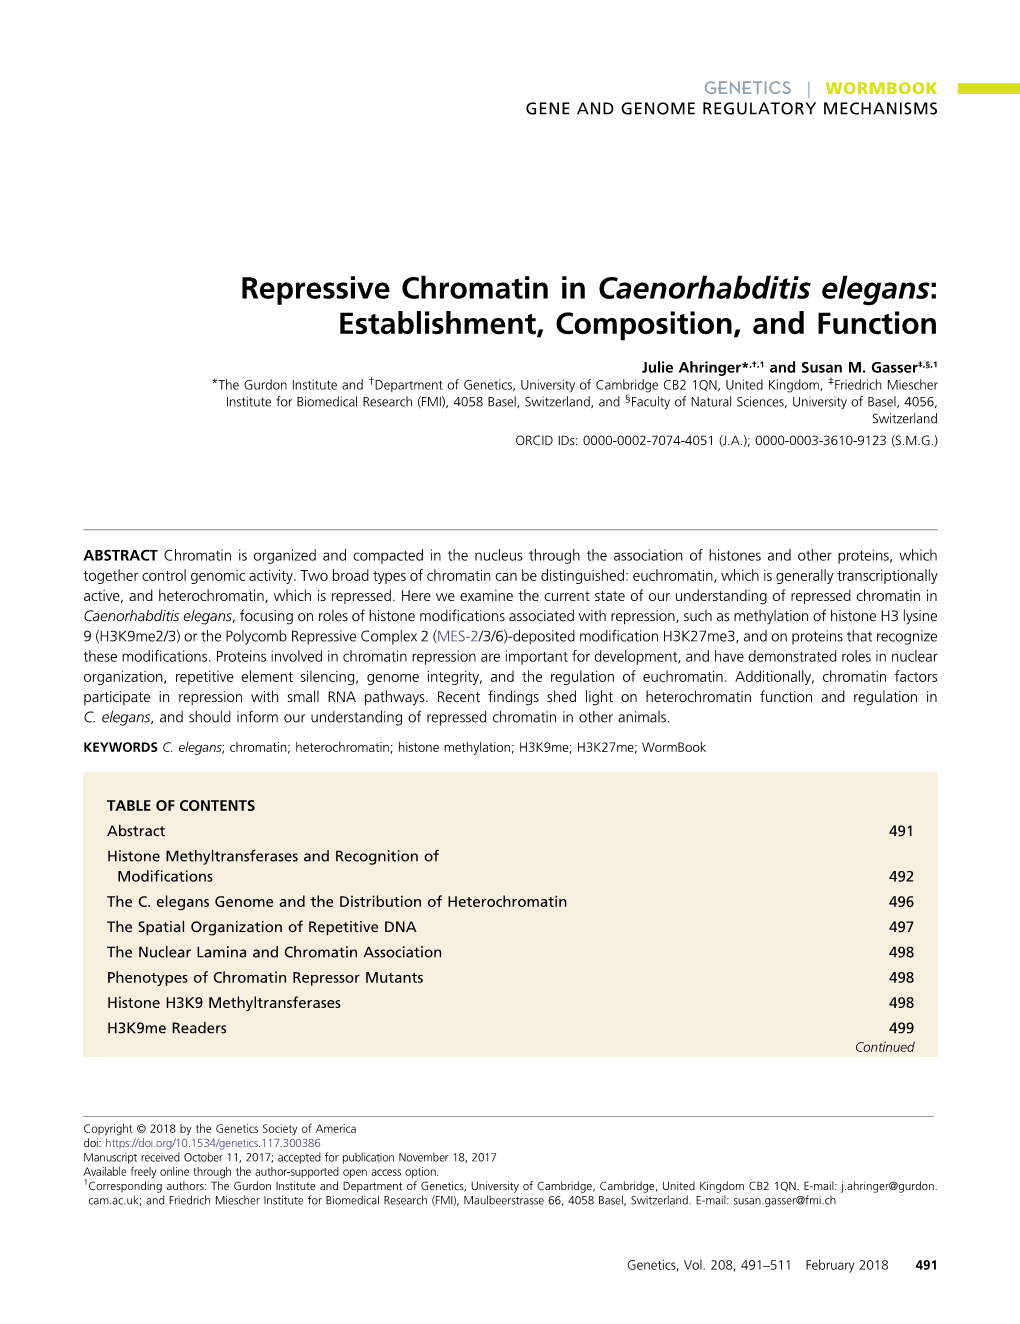 Repressive Chromatin in Caenorhabditis Elegans: Establishment, Composition, and Function